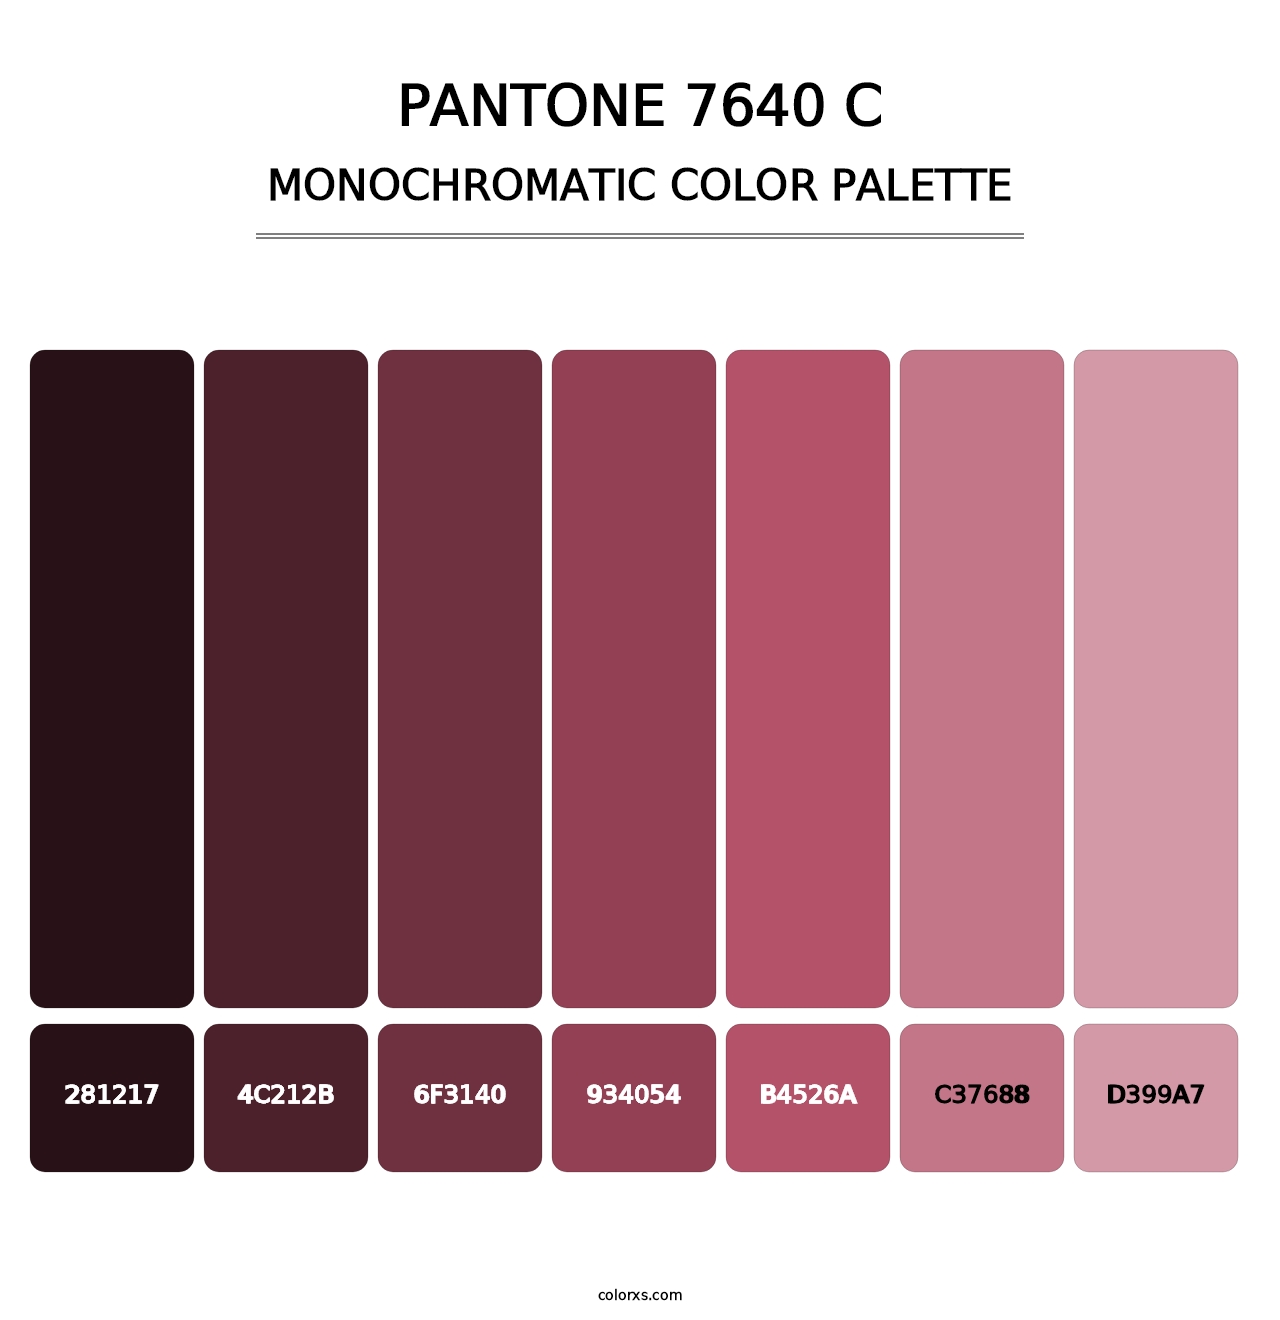 PANTONE 7640 C - Monochromatic Color Palette